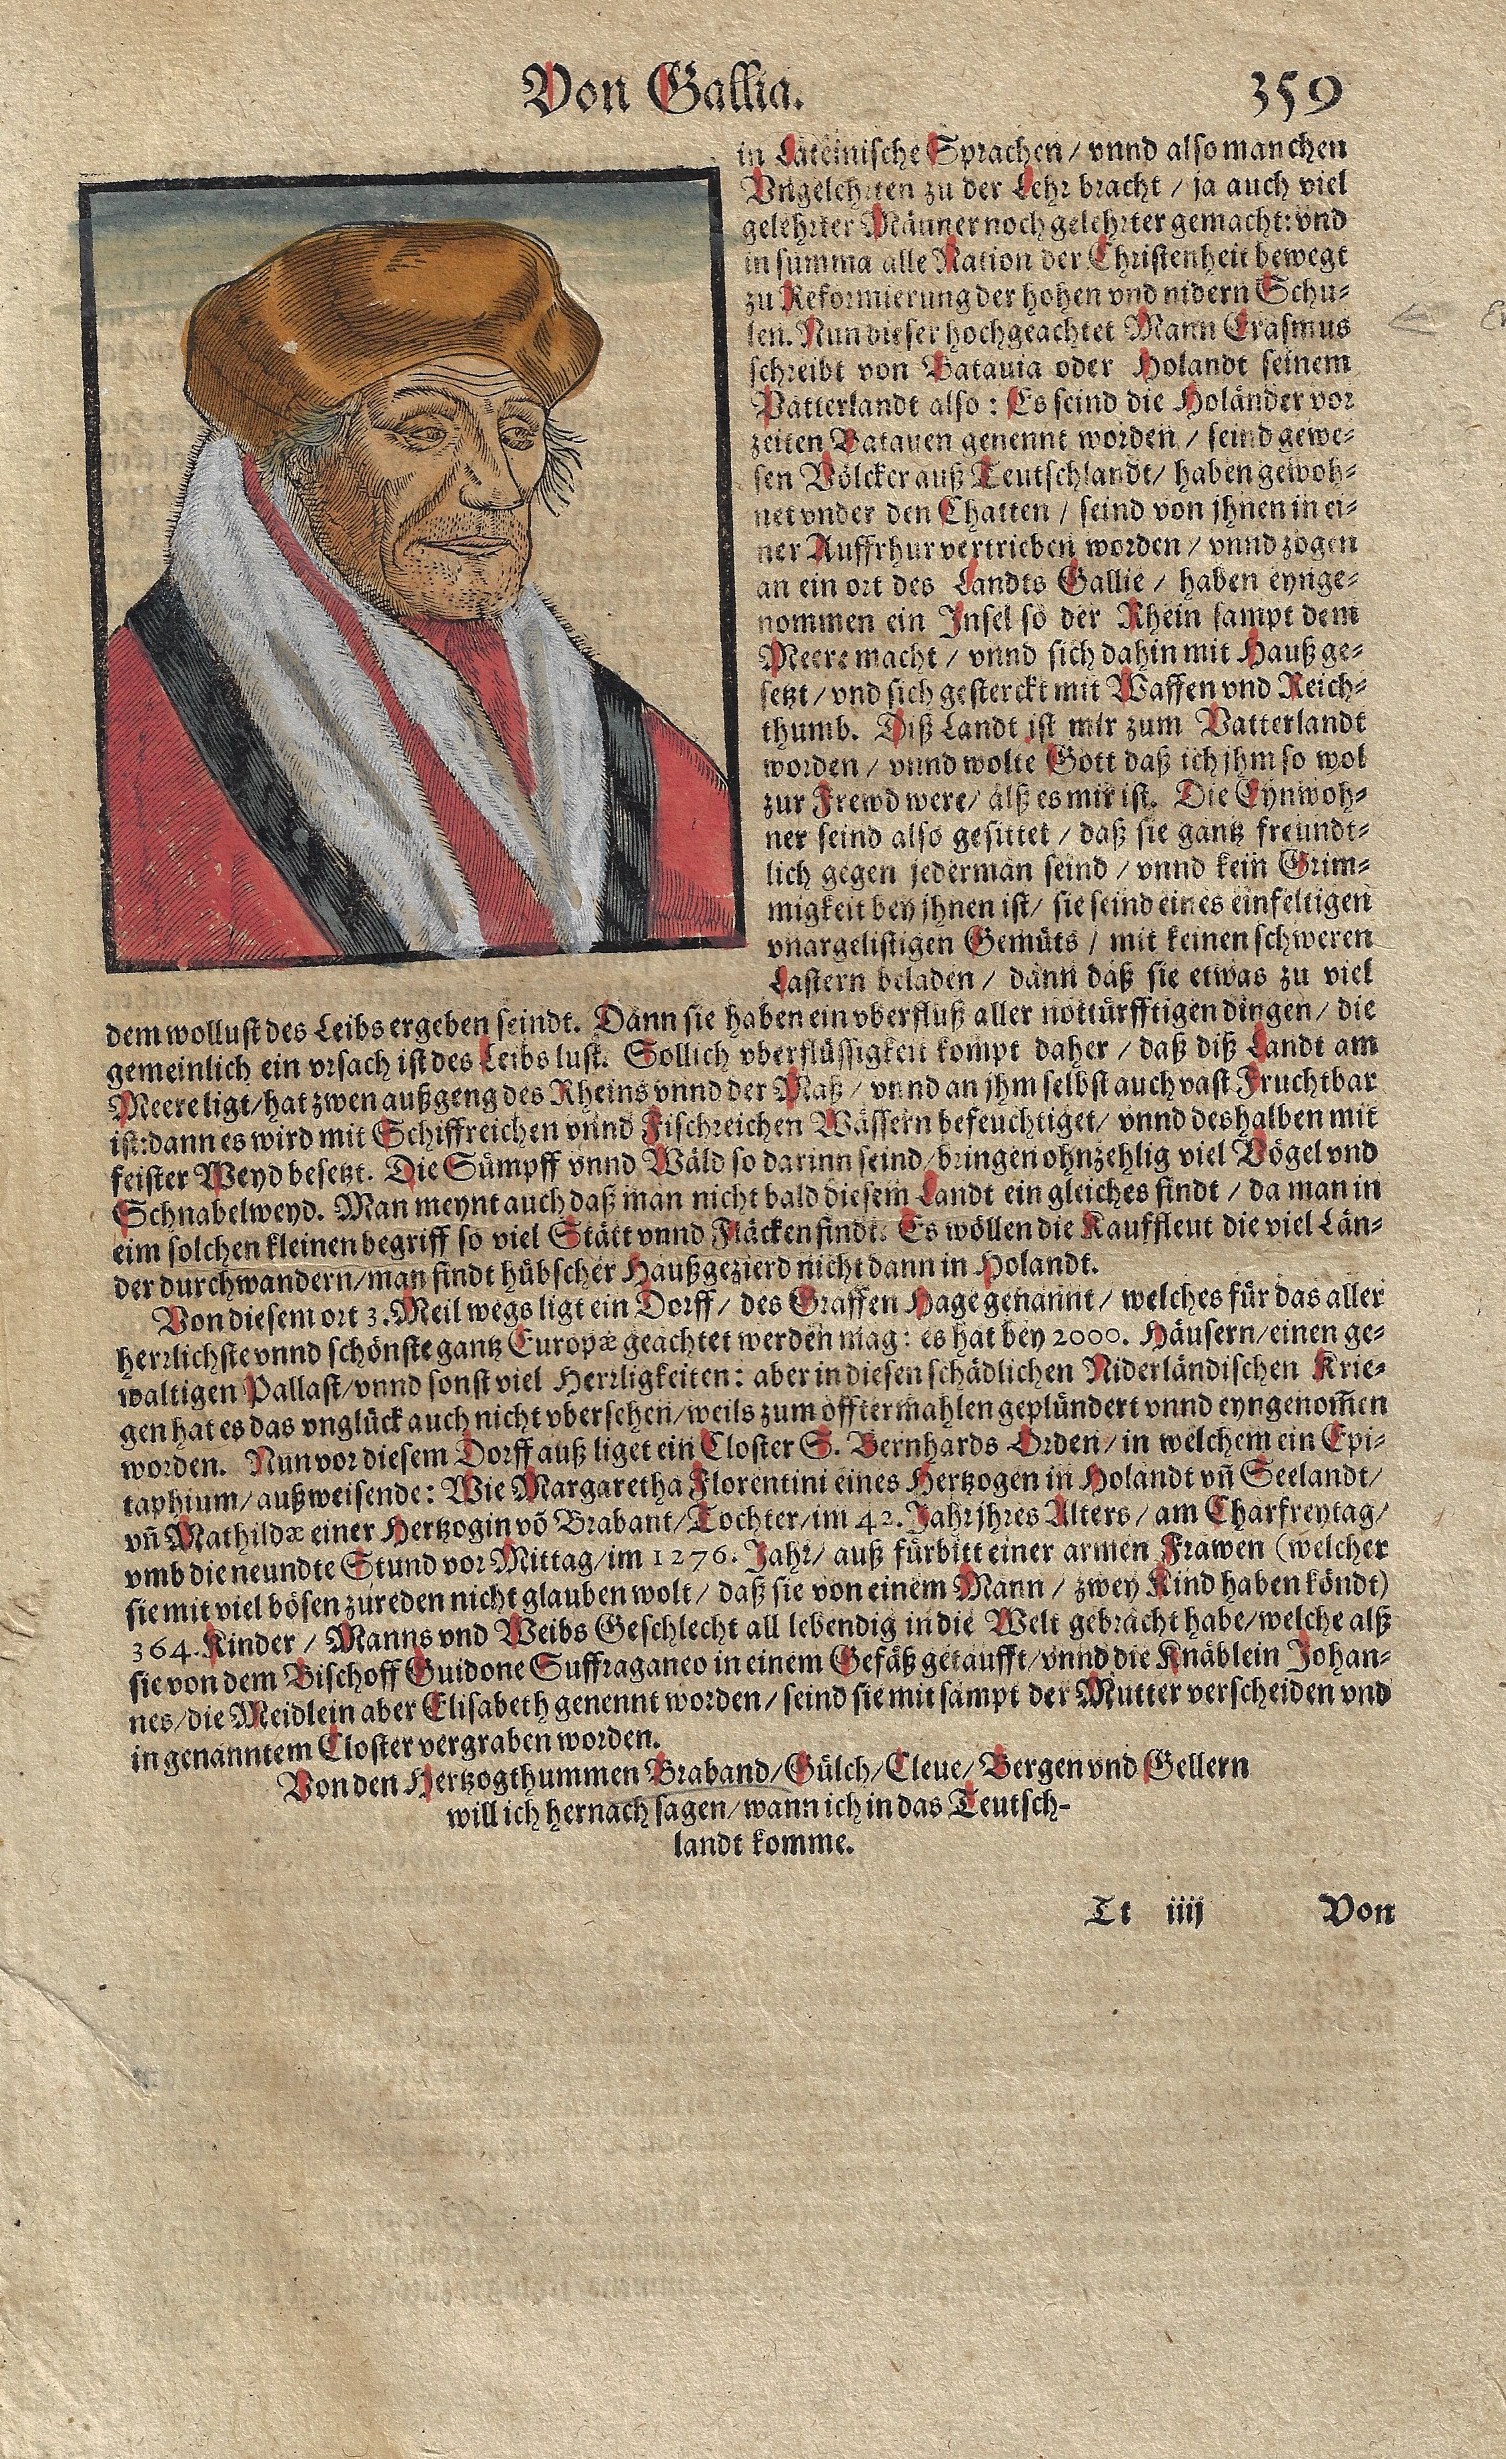 Münster  Von Gallia. 359 / Das Dritte Buch